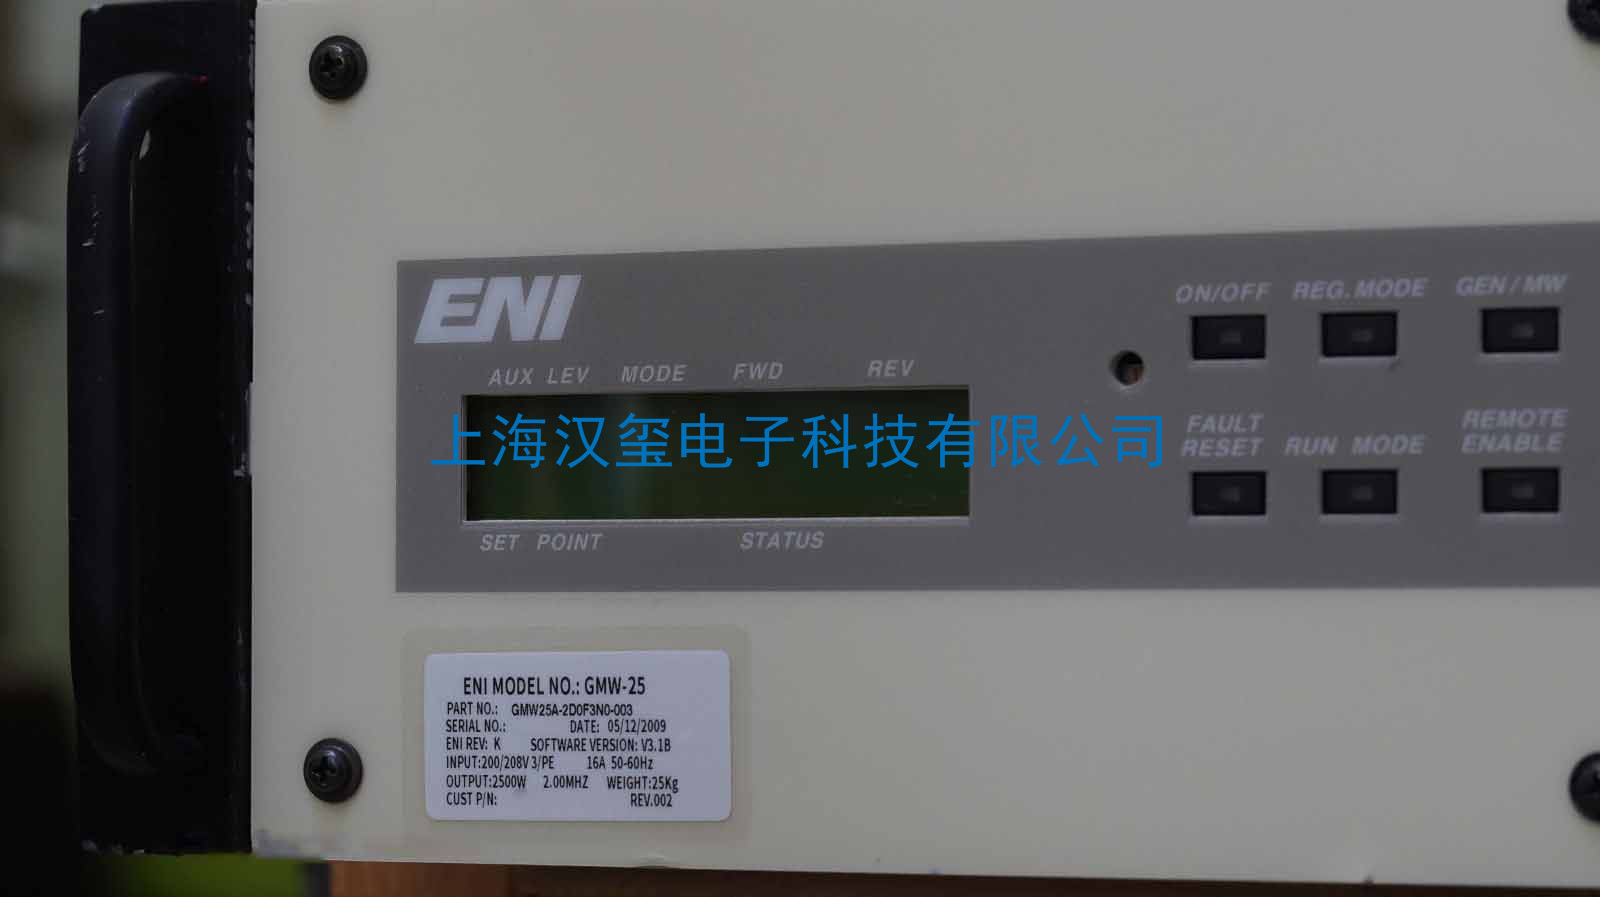 RF generator,ENI(MKS),GENESIS,GHW-25